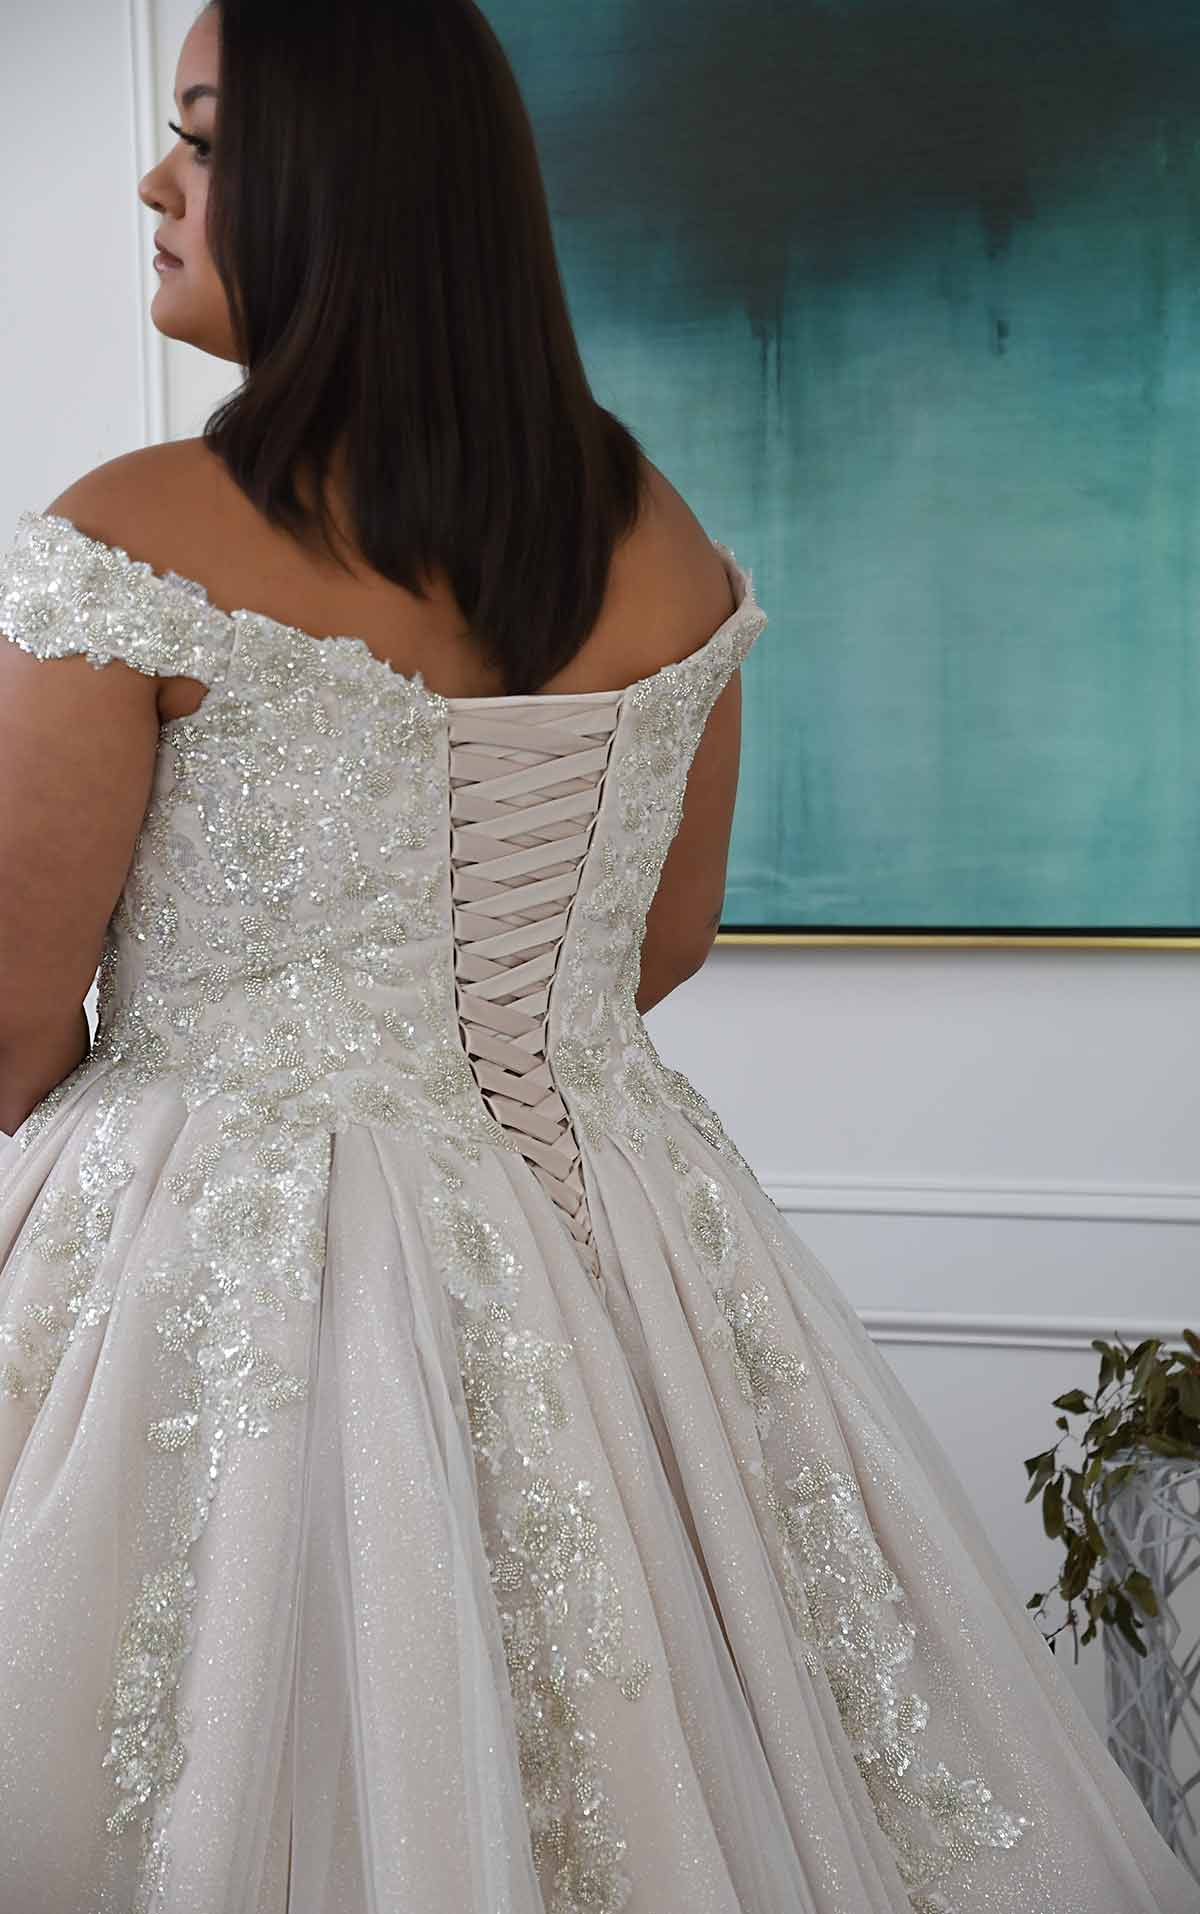 d3245+ Voluminöses, schimmerndes Prinzessinen-Brautkleid mit Carmen-Ausschnitt  by Essense of Australia